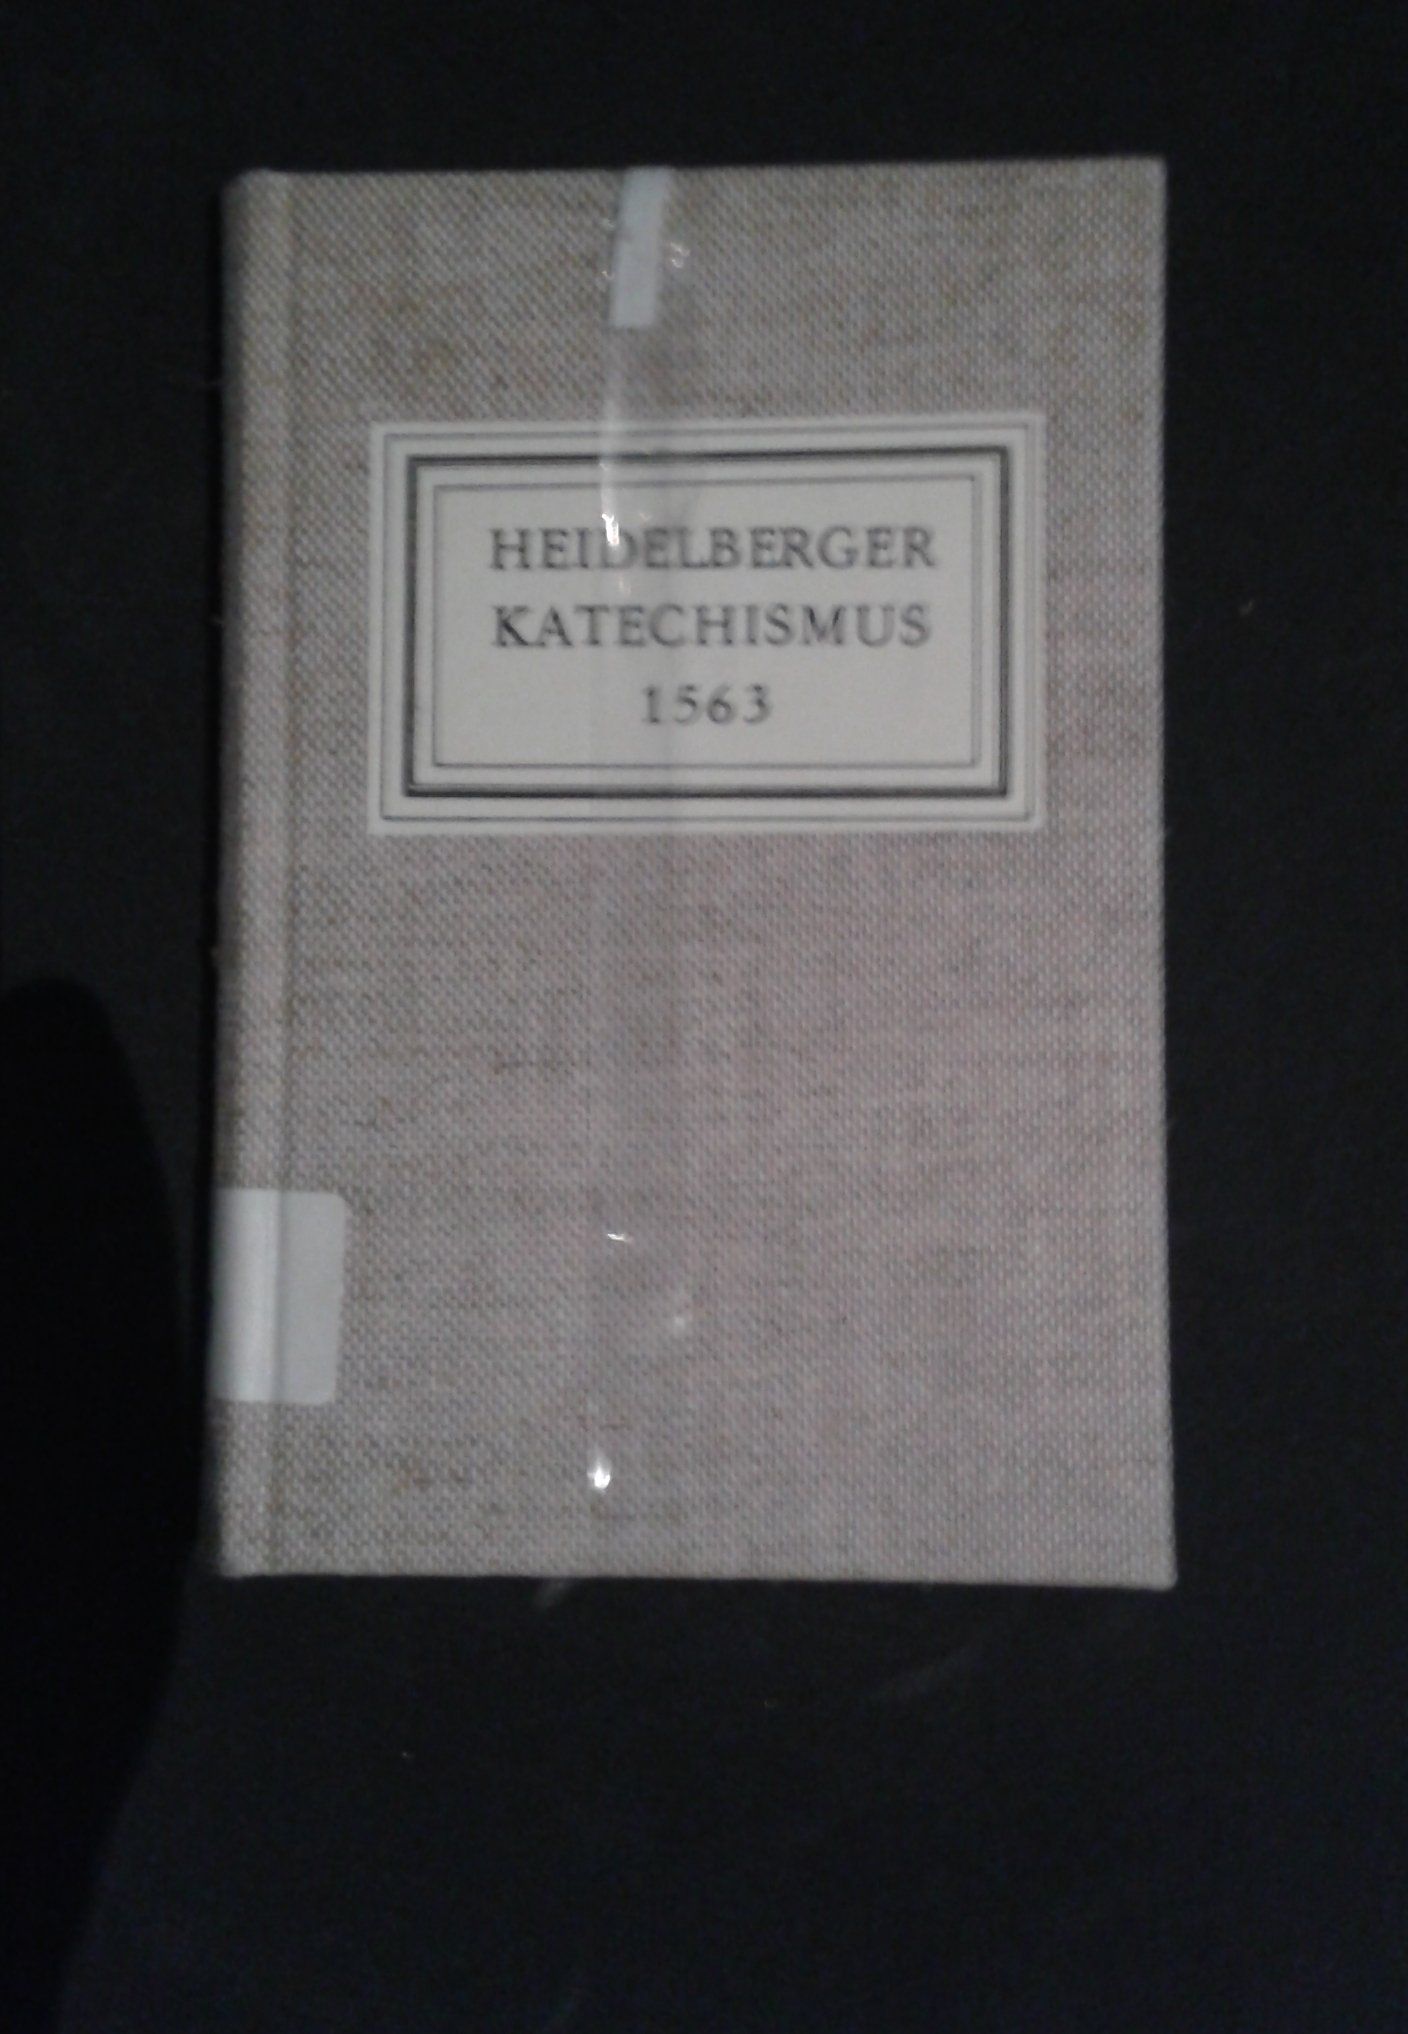 Reprint des Heidelberger Katechismus (1983) (Historisches Museum der Pfalz, Speyer CC BY)